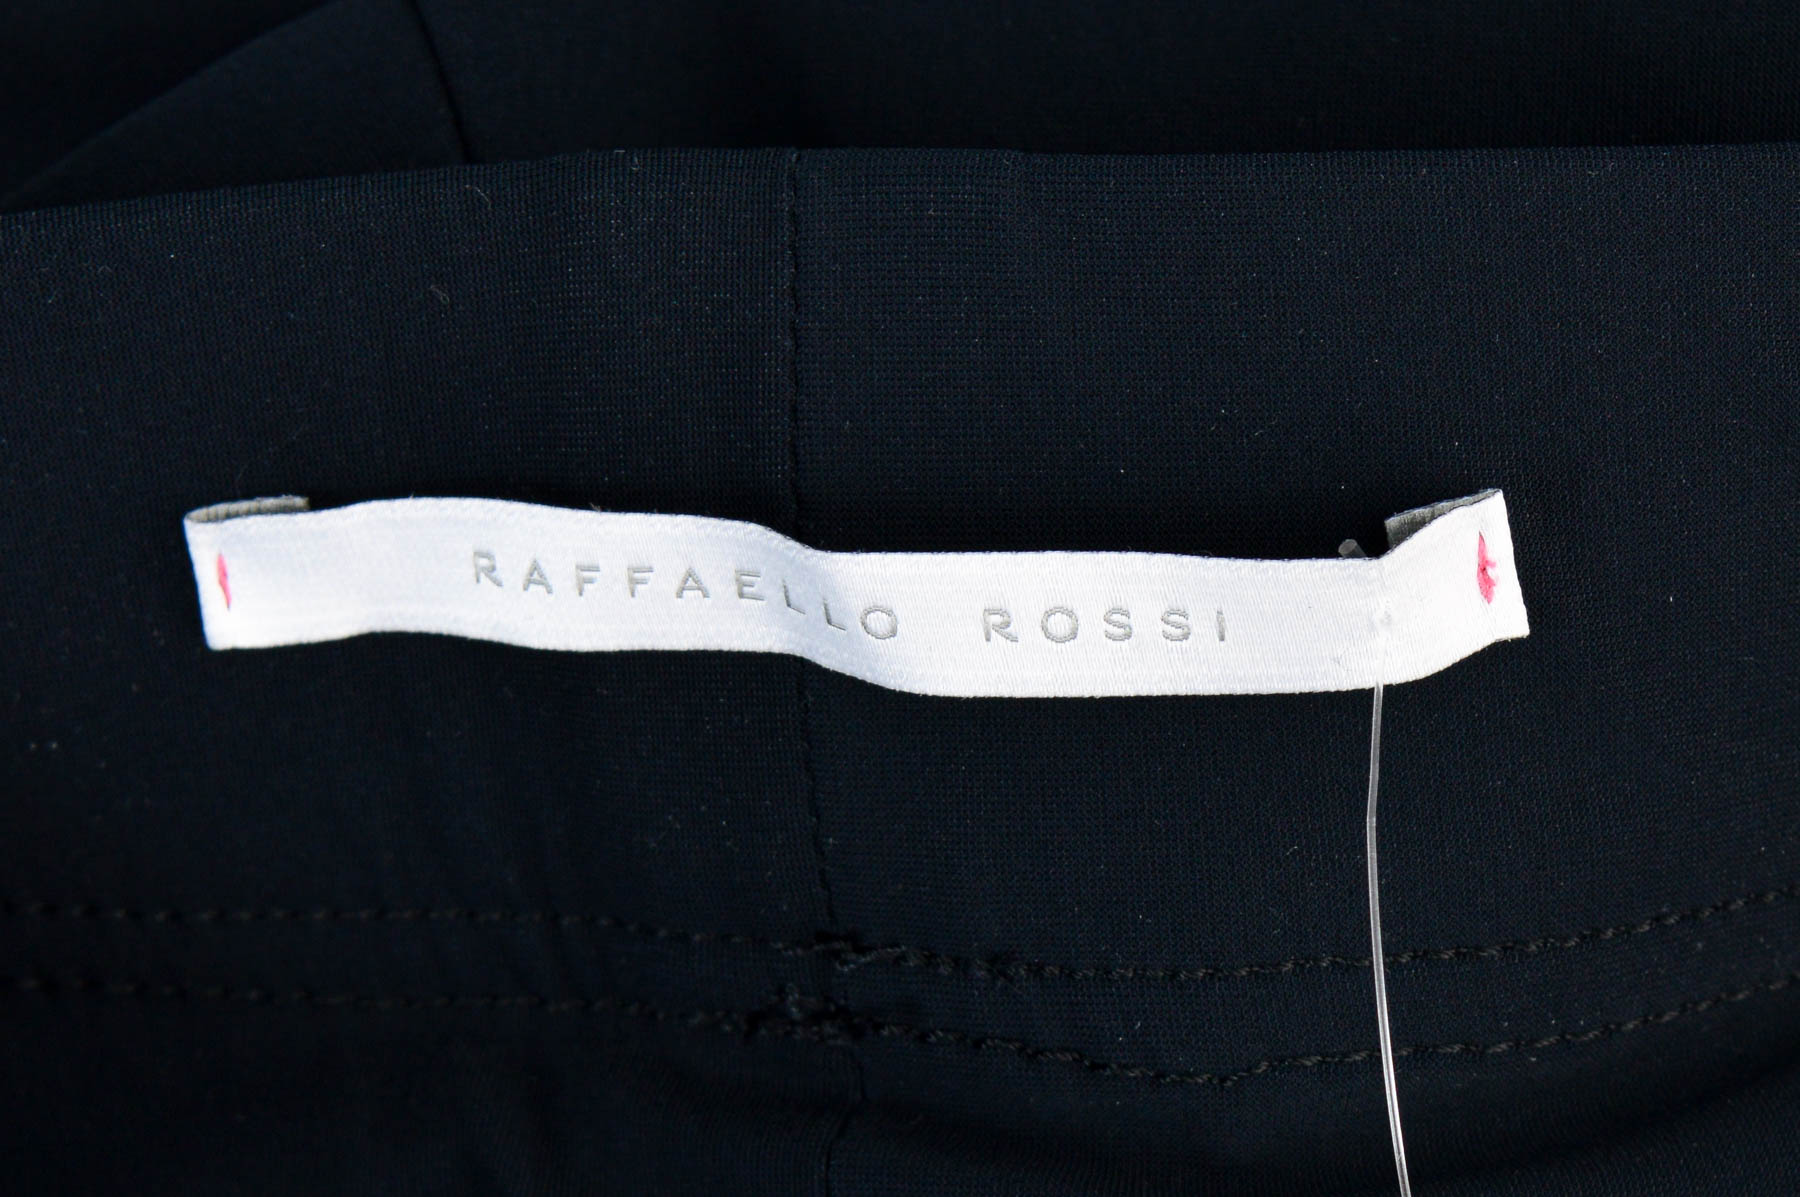 Women's trousers - Raffaello Rossi - 2